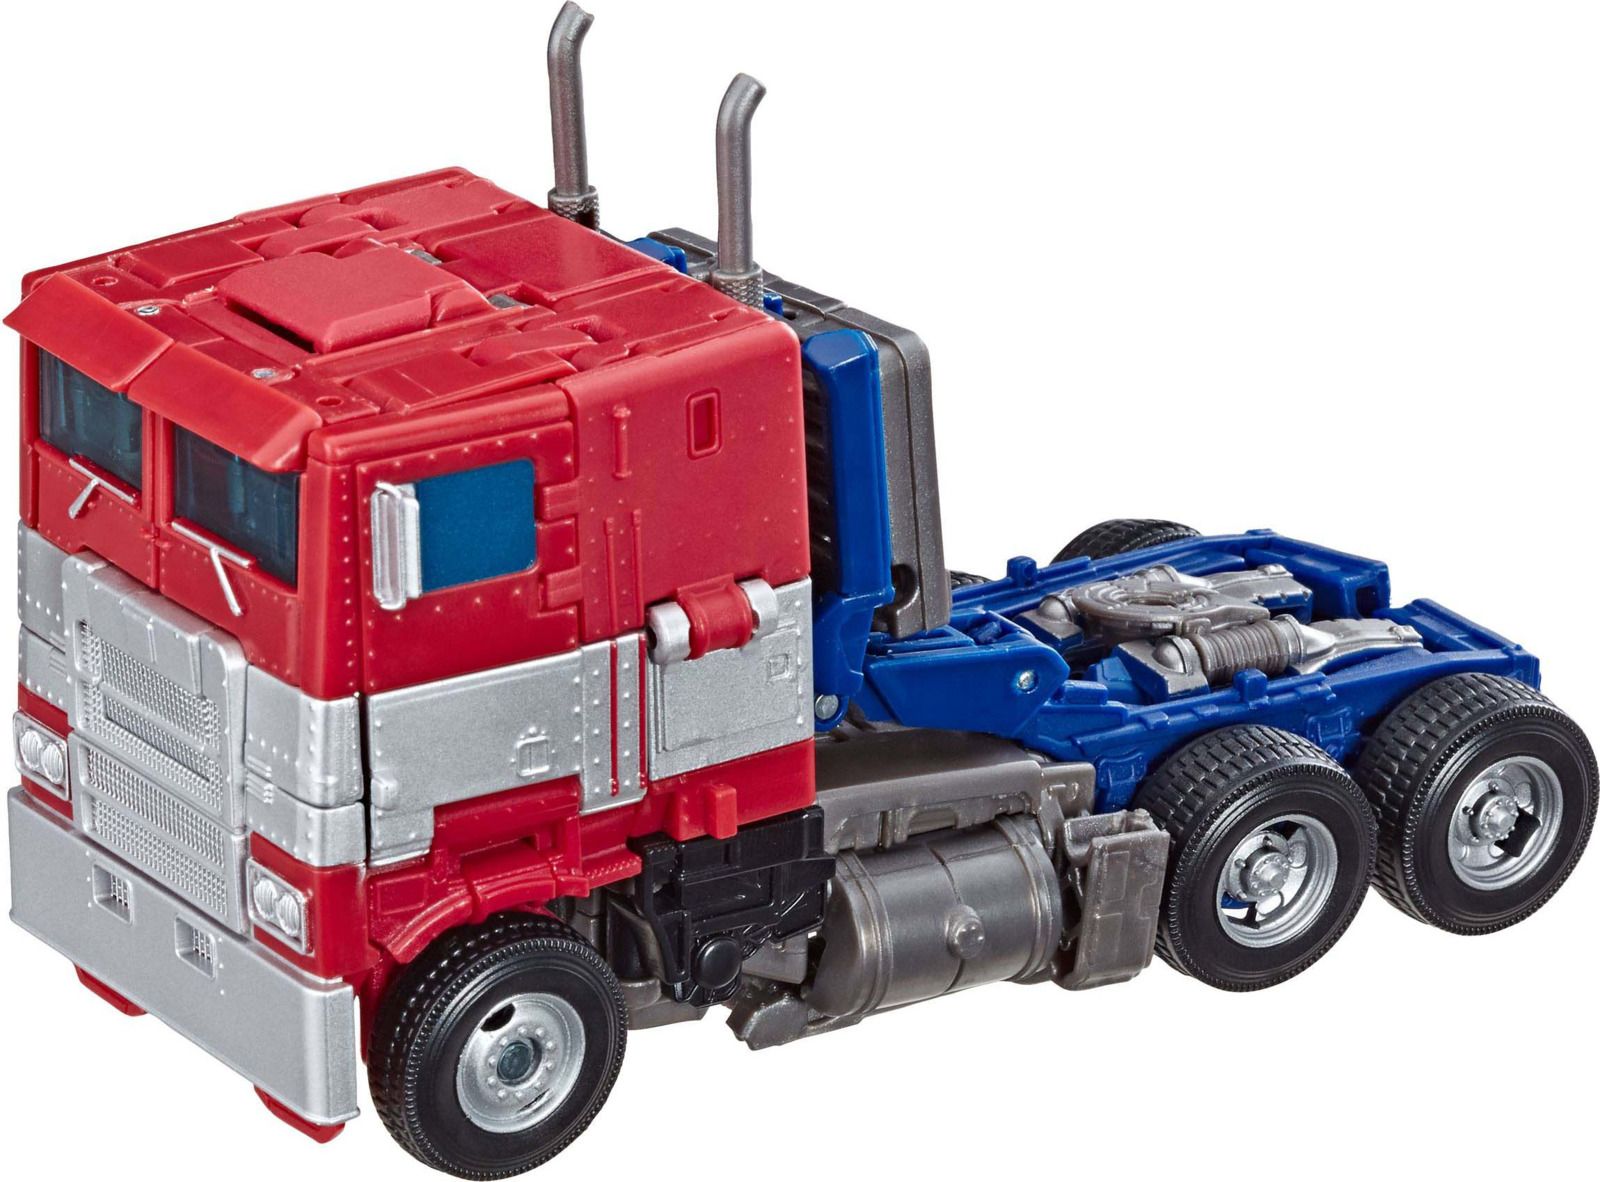  Transformers Optimus Prime, E0702 E4629